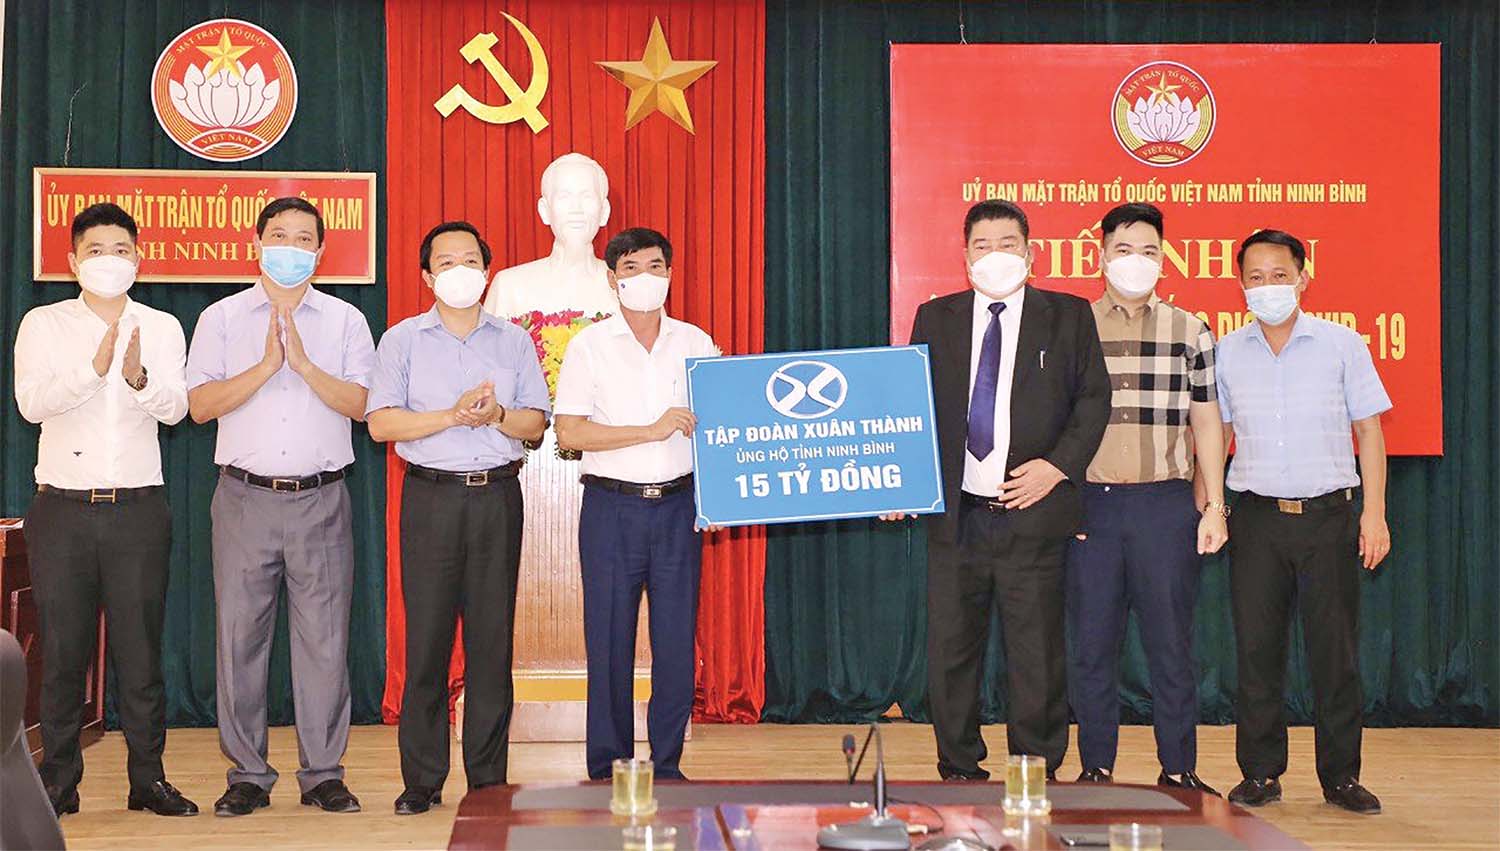 Chủ tịch HĐQT Tập đoàn Xuân Thành trao 15 tỷ đồng cho Quỹ phòng chống  Covid-19 của Ninh Bình.